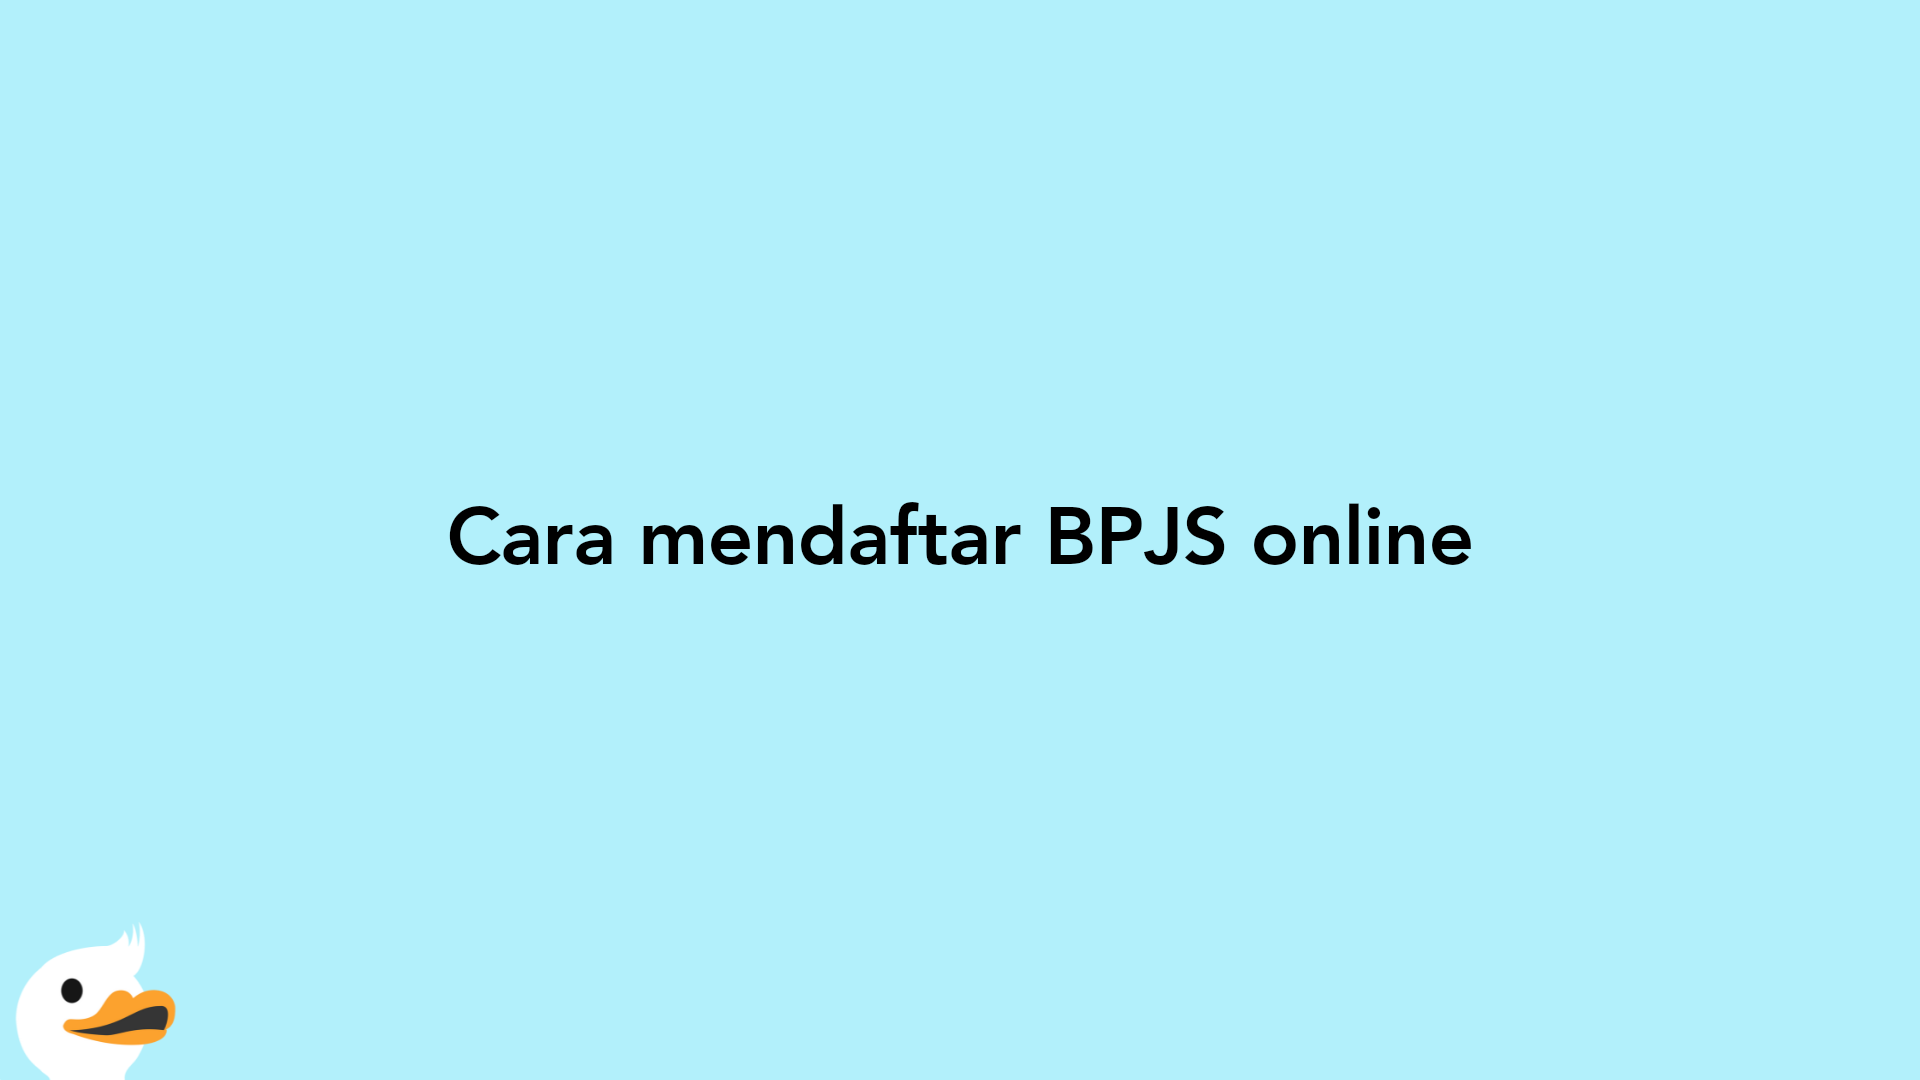 Cara mendaftar BPJS online